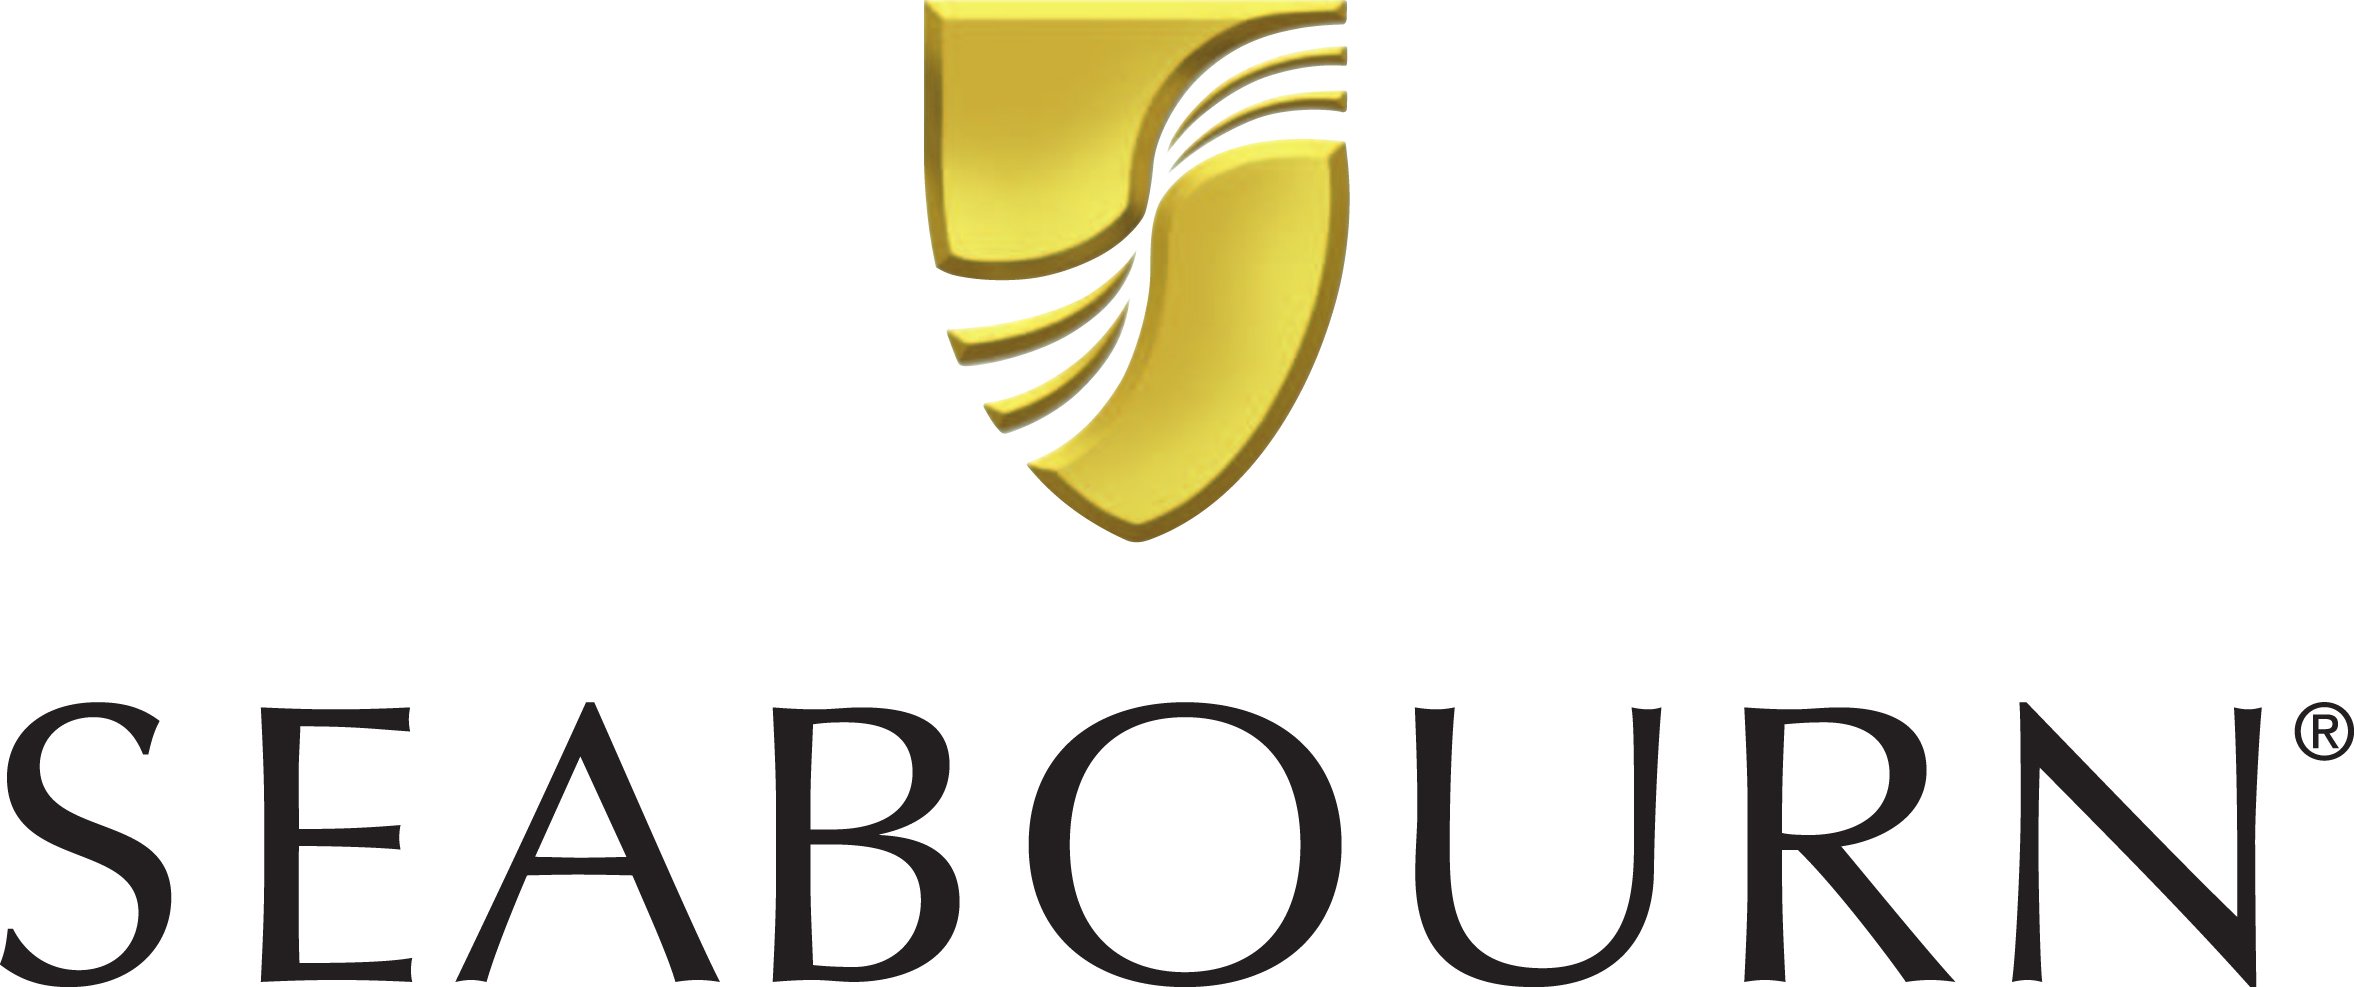 seabourn_logo image